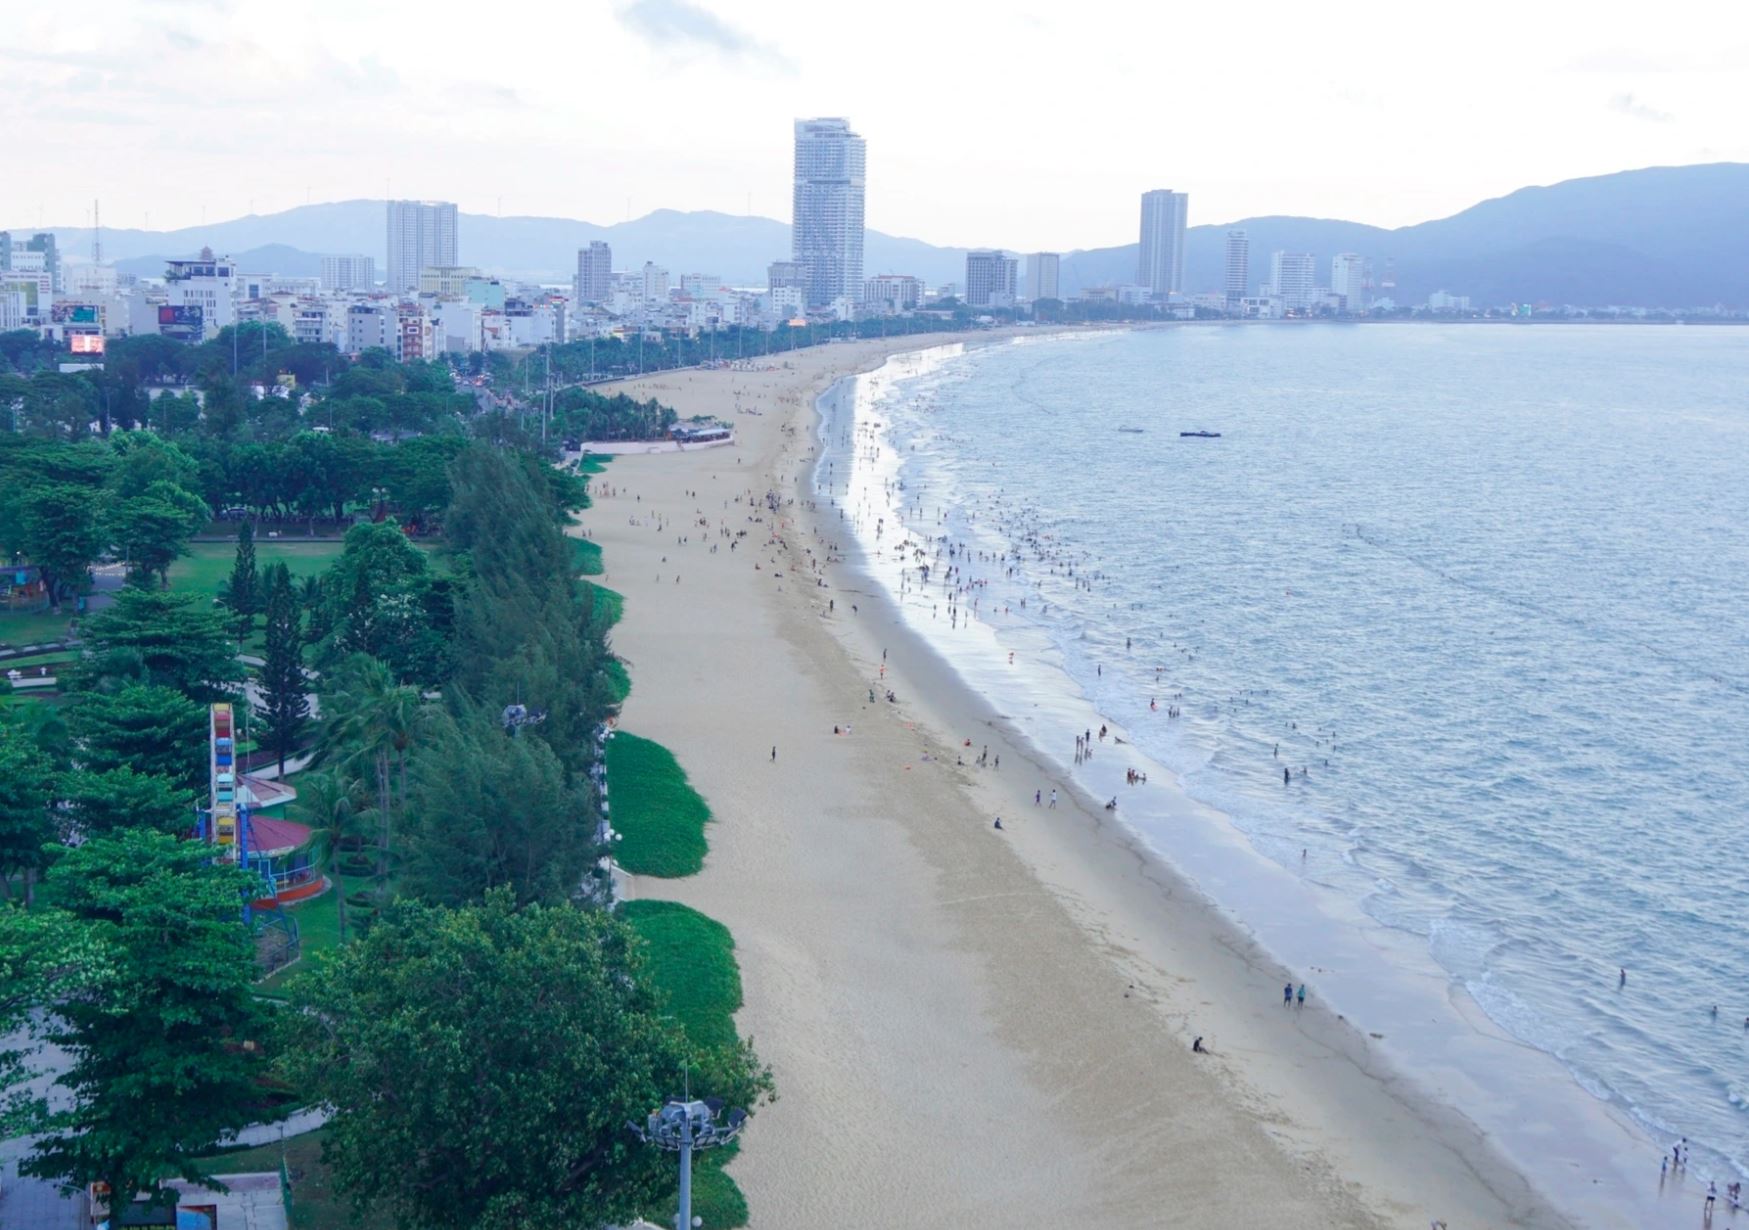 Quy hoạch bãi biển Quy Nhơn nhằm thúc đẩy phát triển du lịch